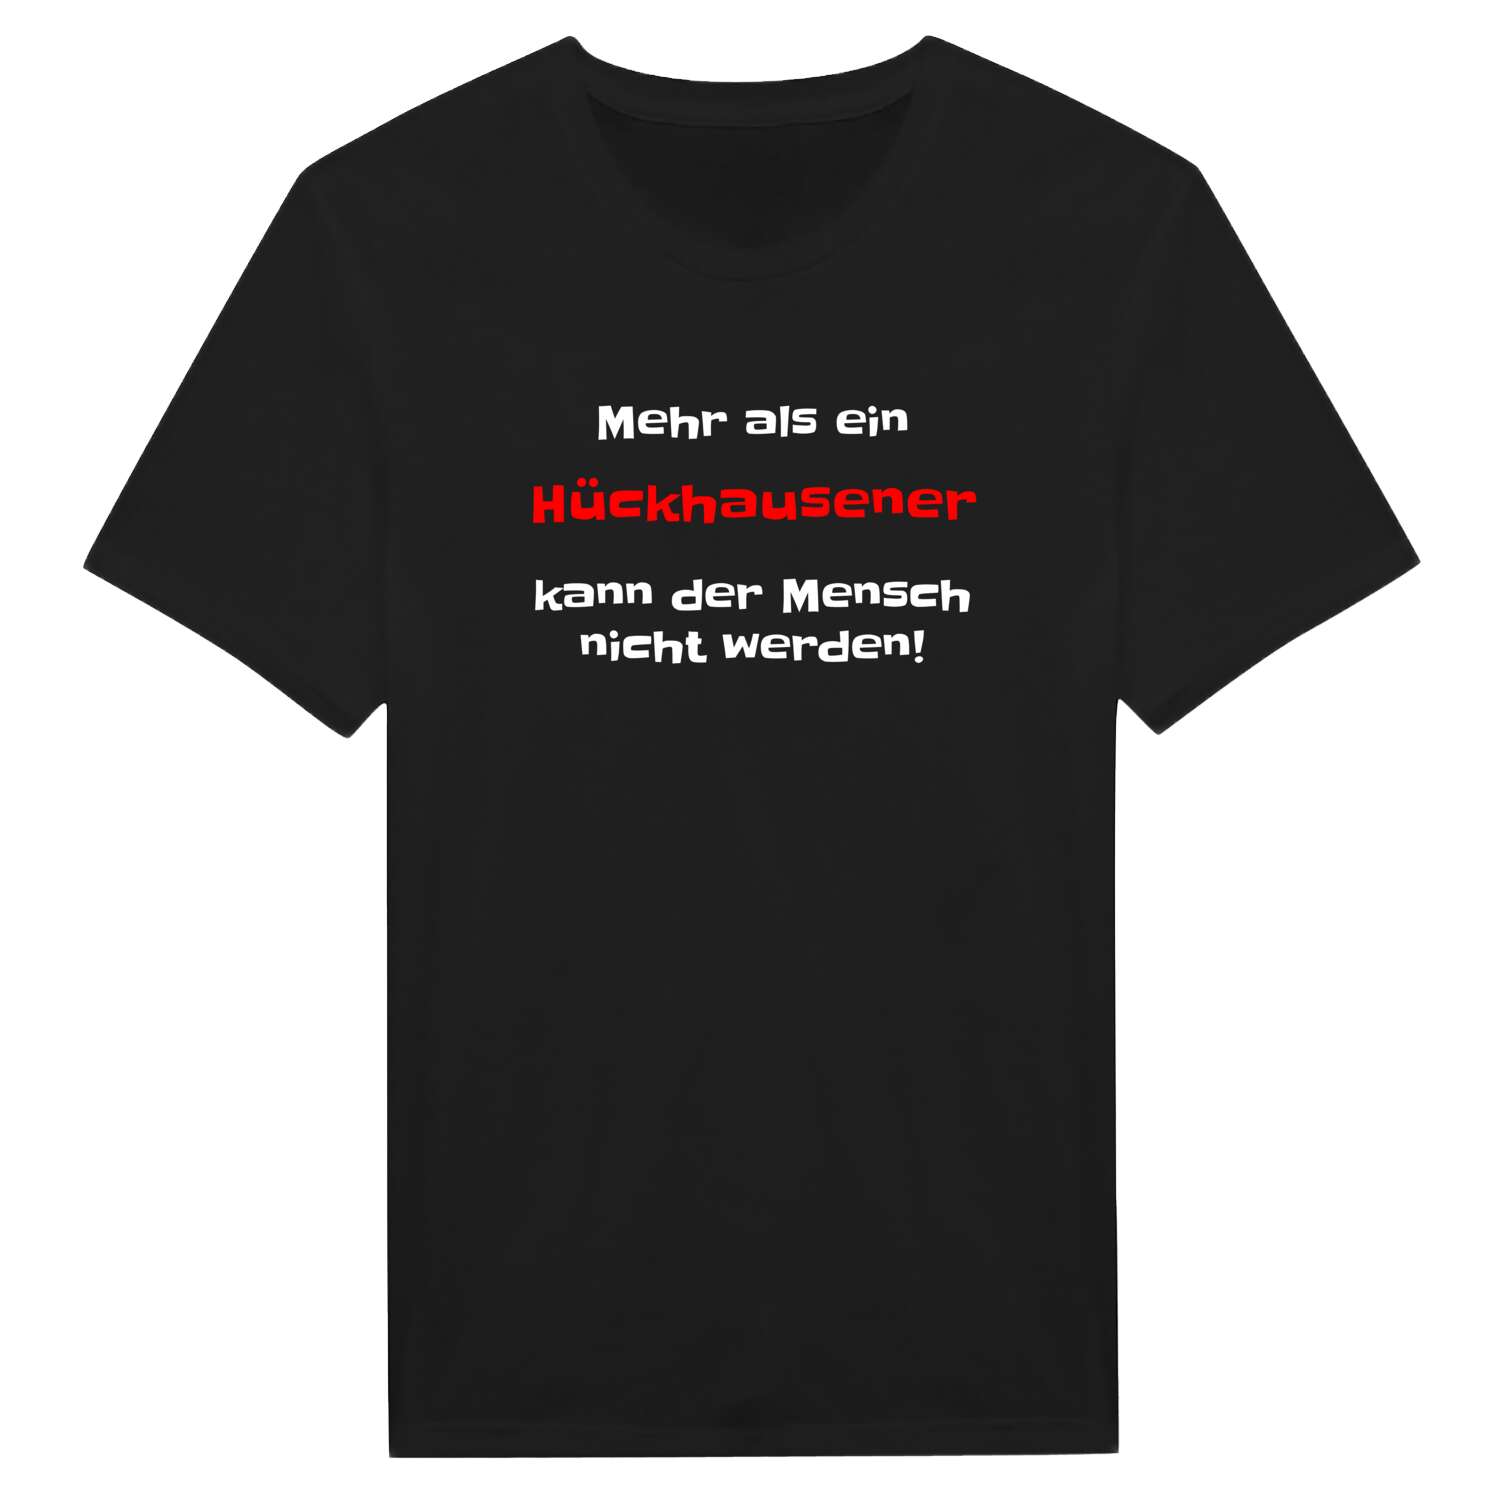 Hückhausen T-Shirt »Mehr als ein«